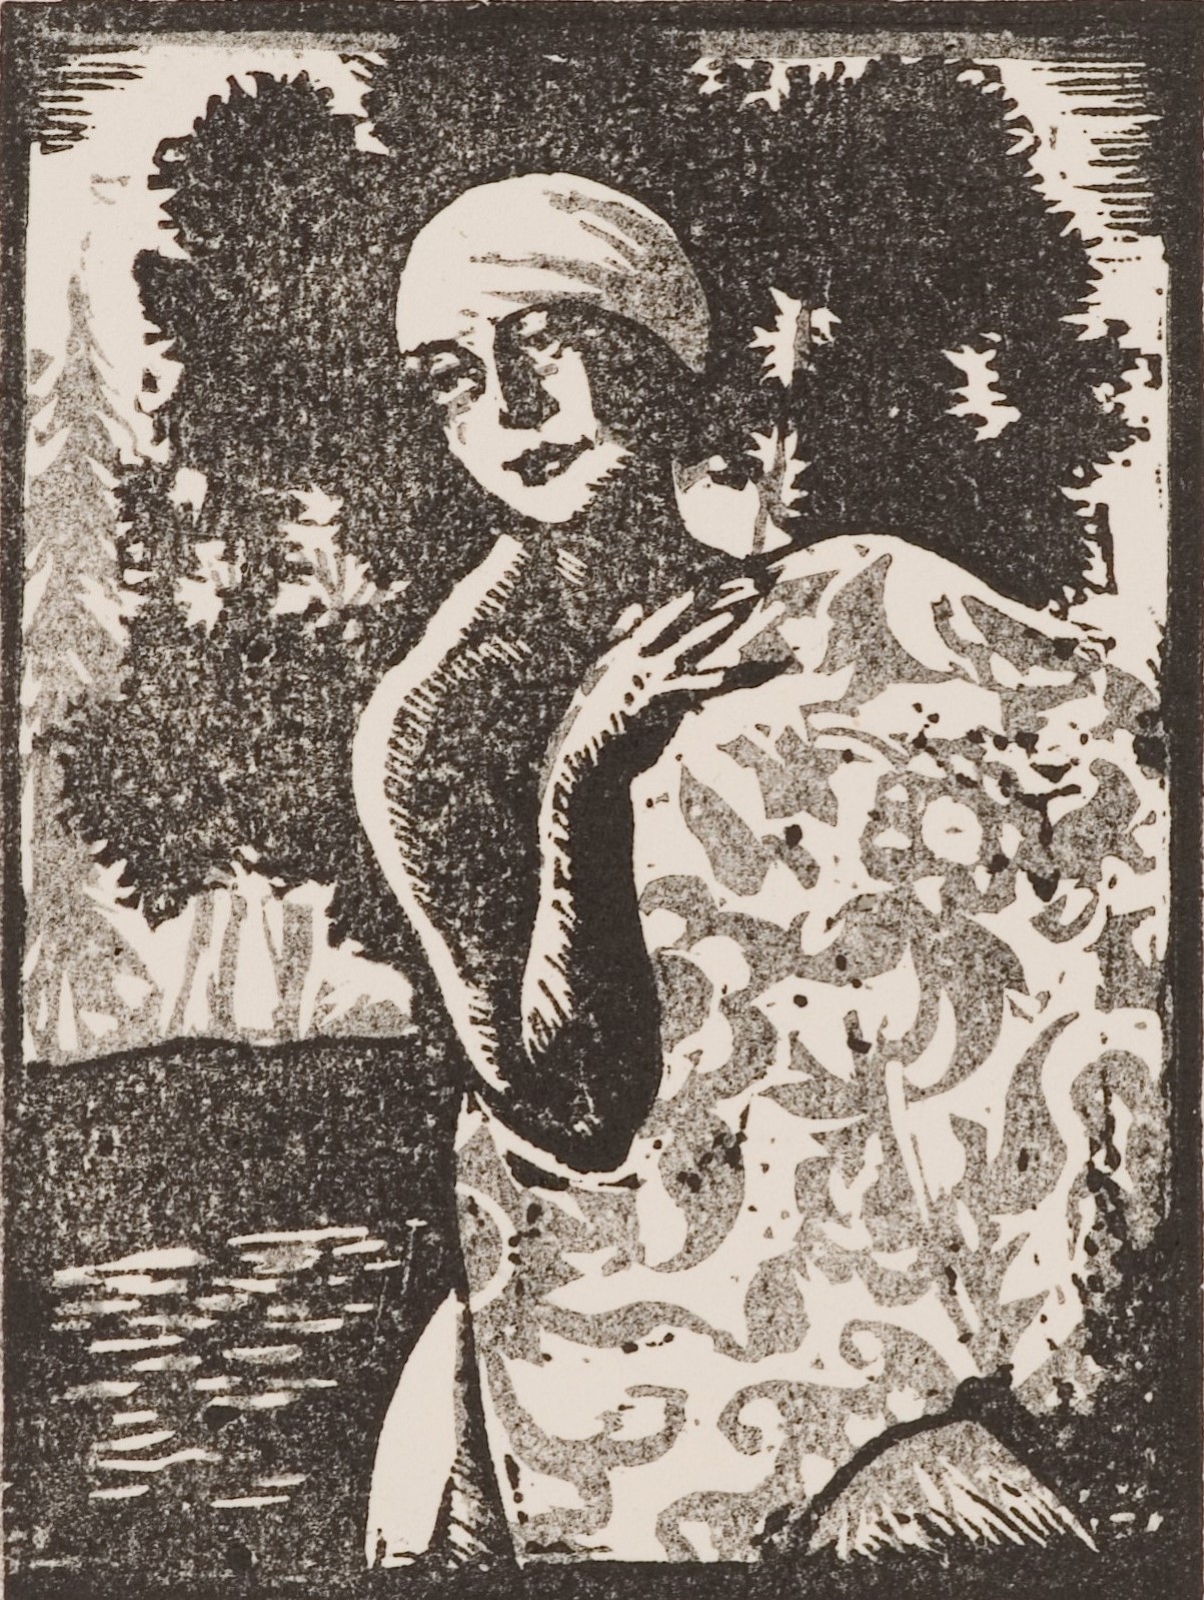 Купальщица с шалью. Из цикла «Купальщицы». 1926 